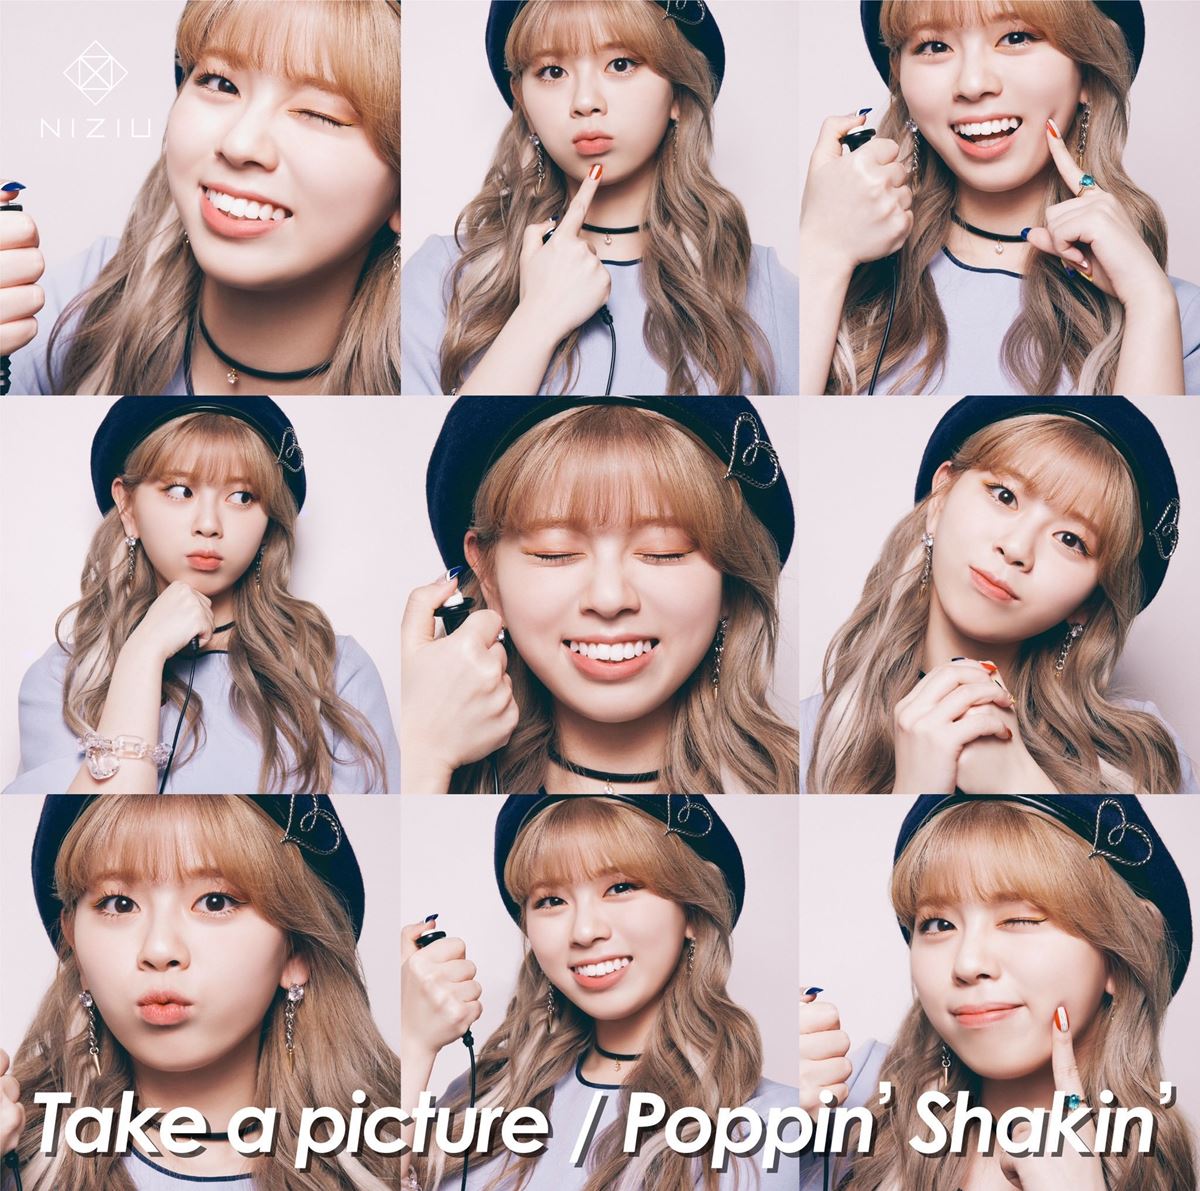 『Take a picture／Poppin’ Shakin’』RIKU盤ジャケット